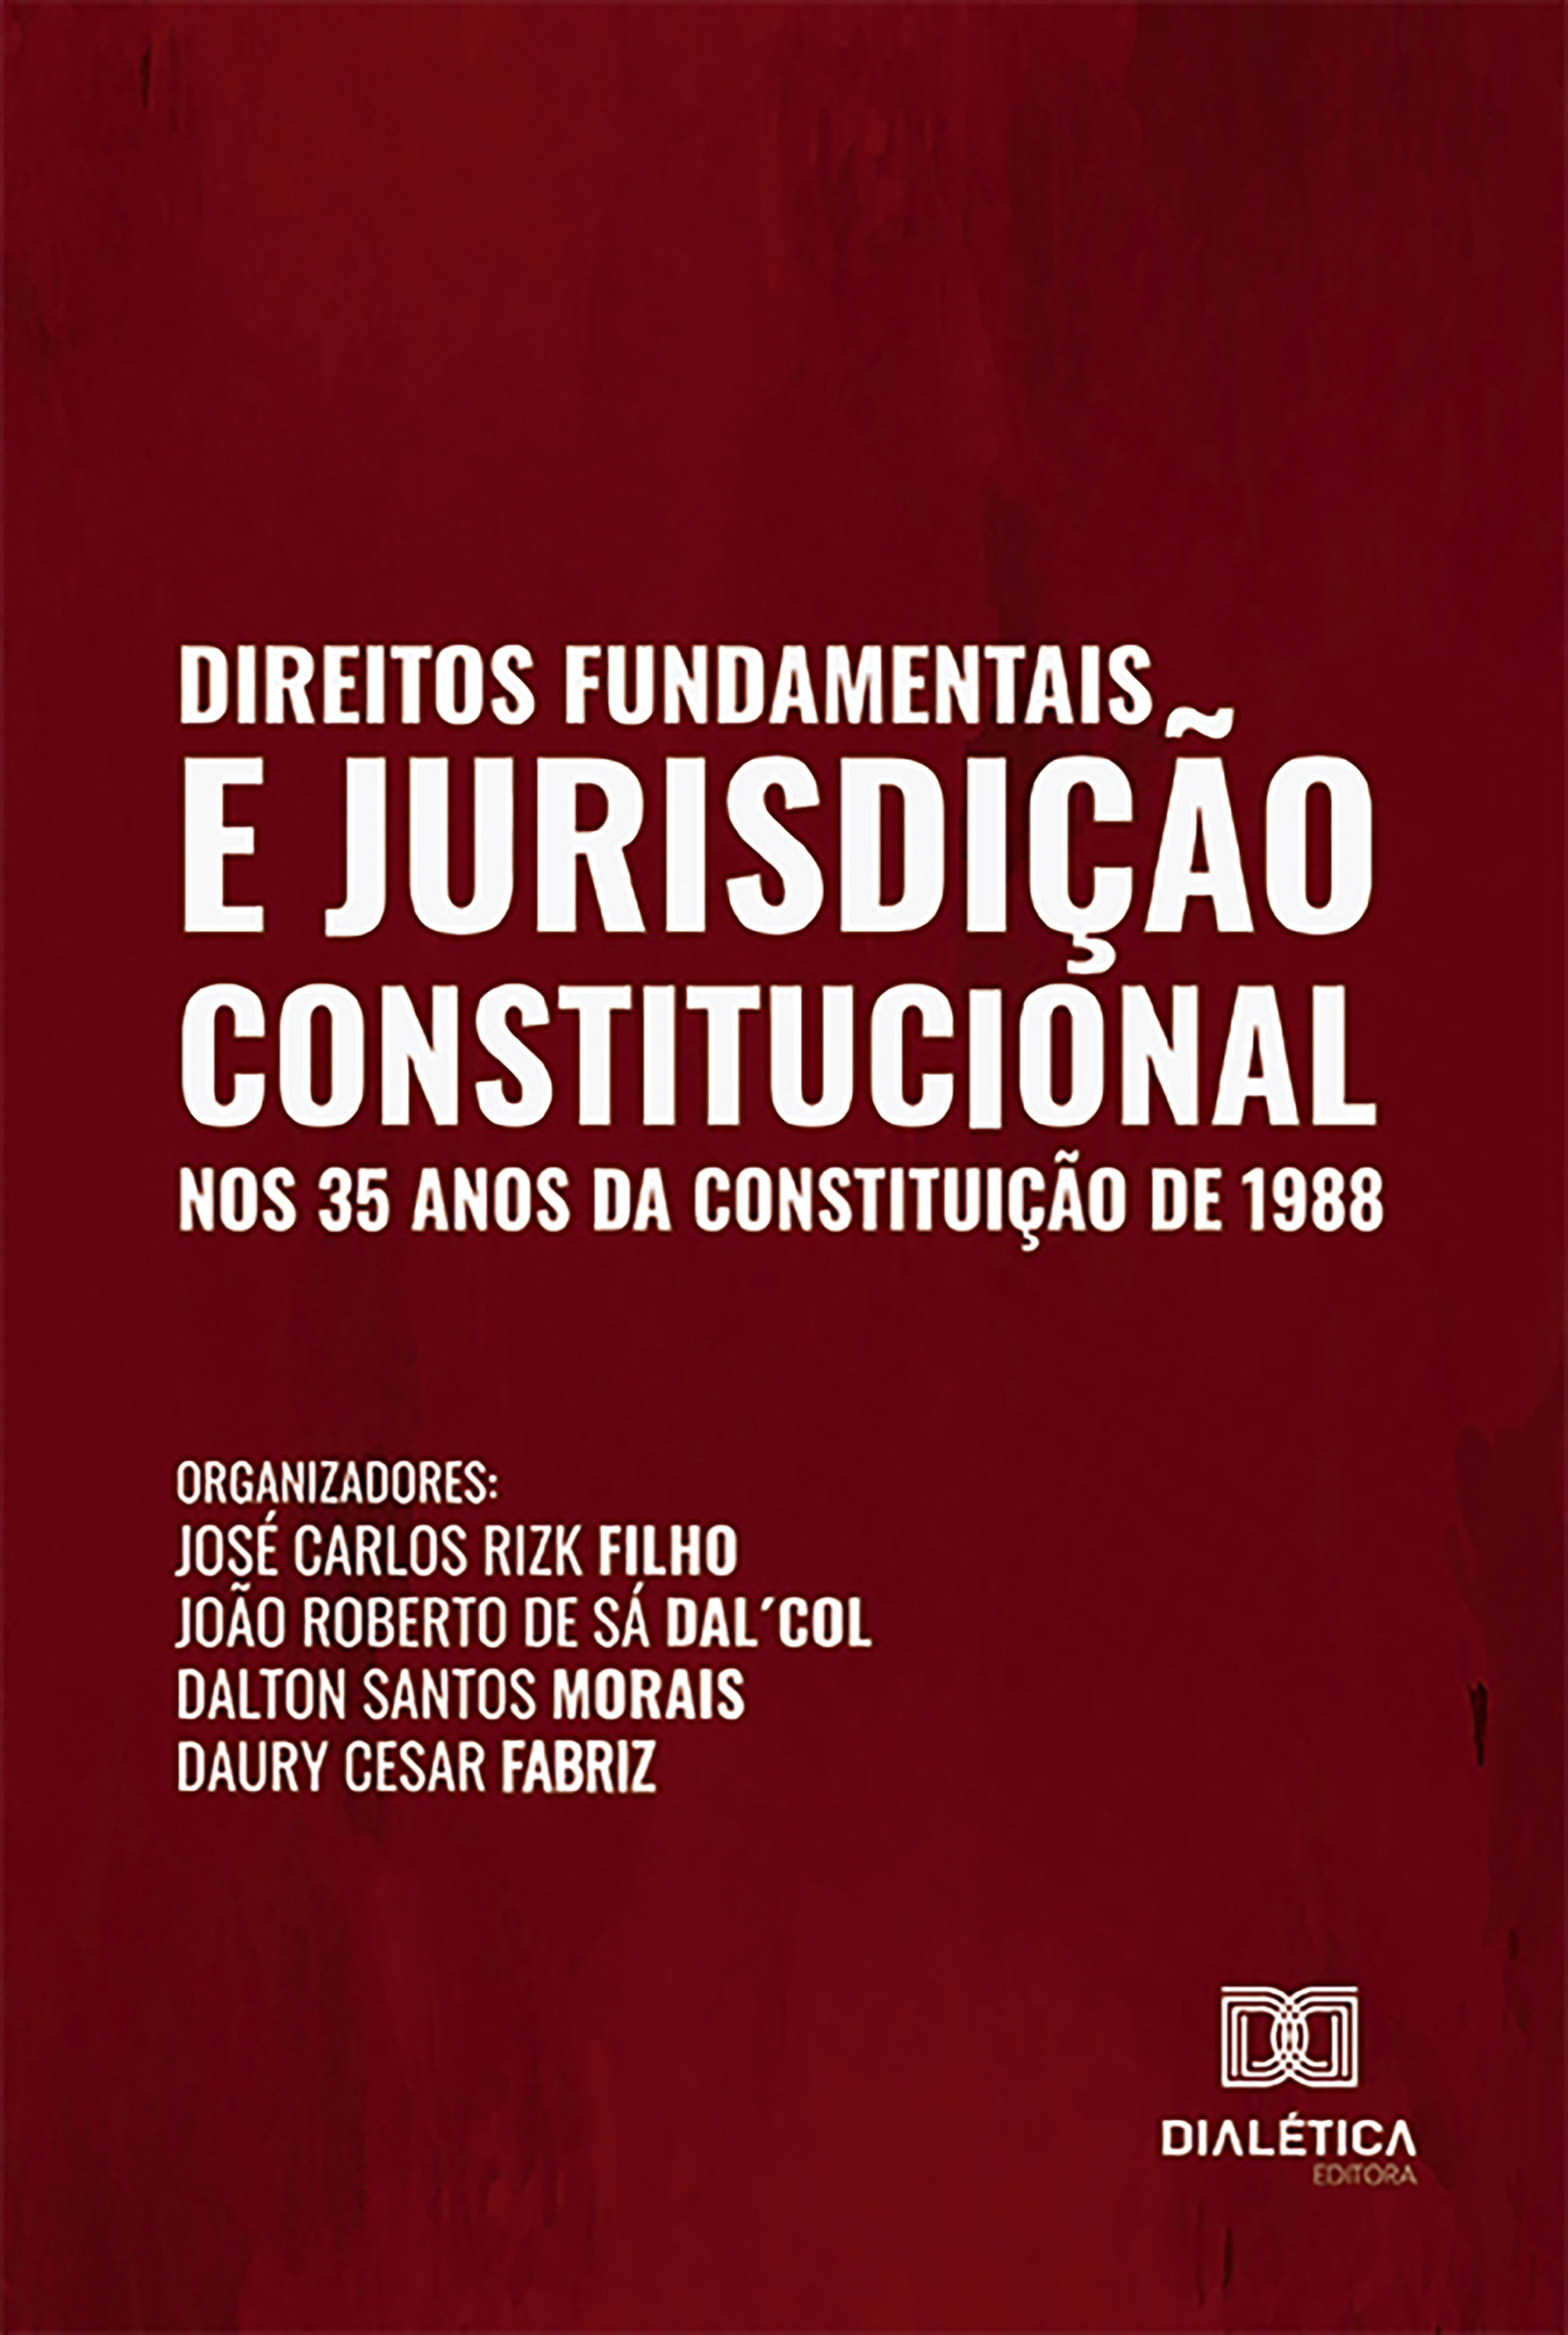 Direitos Fundamentais e Jurisdição Constitucional nos 35 anos da Constituição de 1988